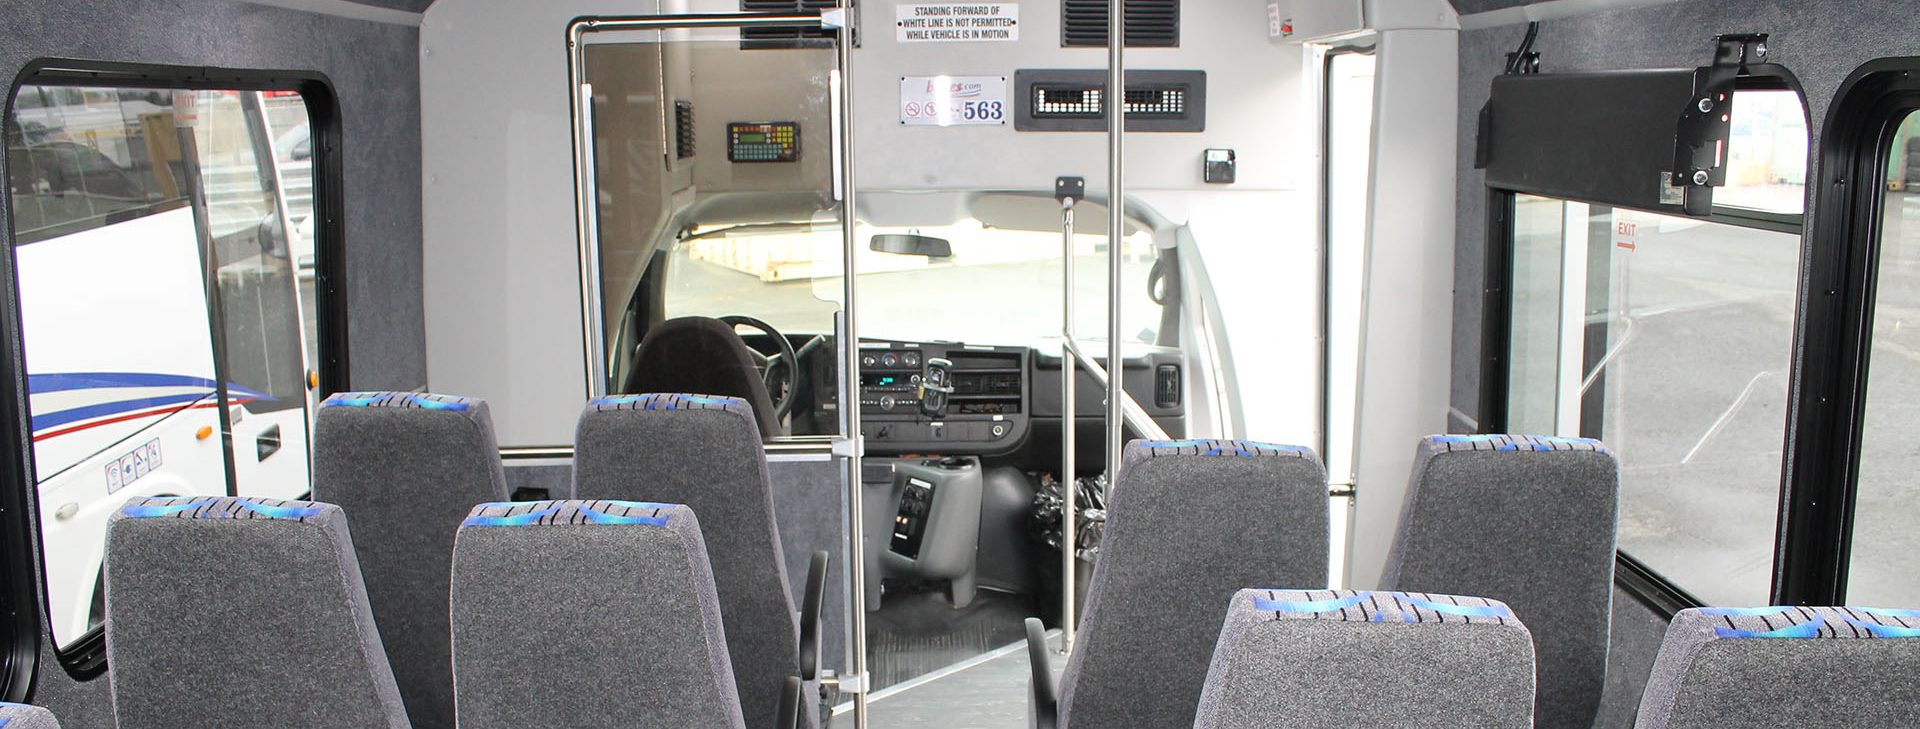 La Paz Shuttle Bus